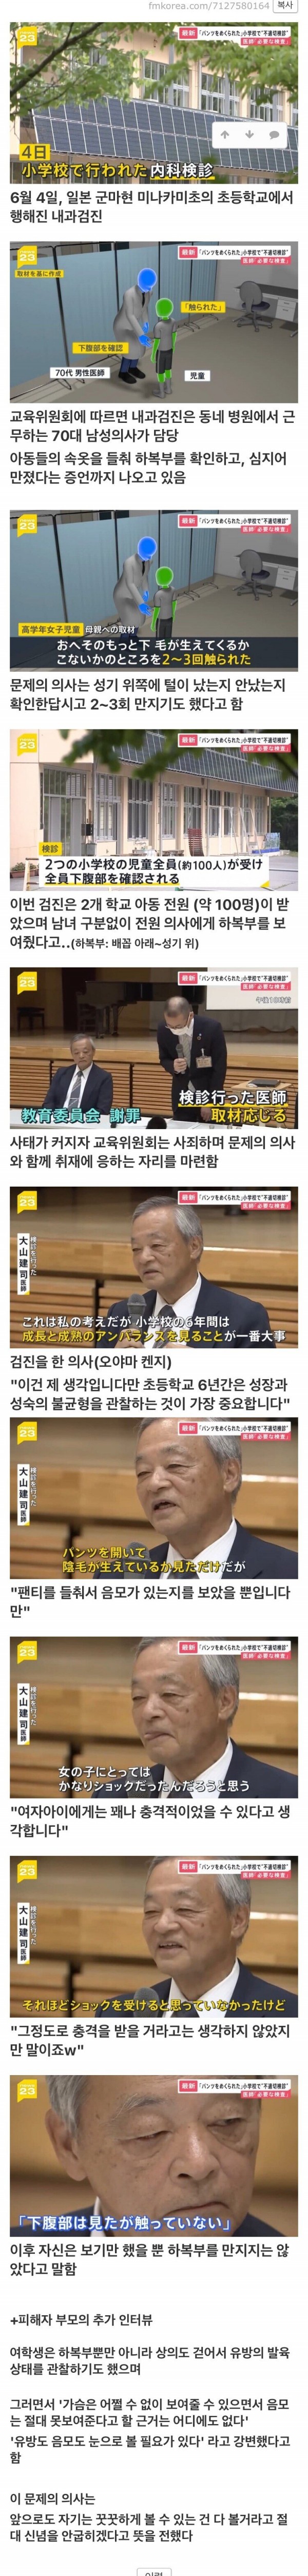 일본에서 성범죄를 저지른 의사의 마인드 